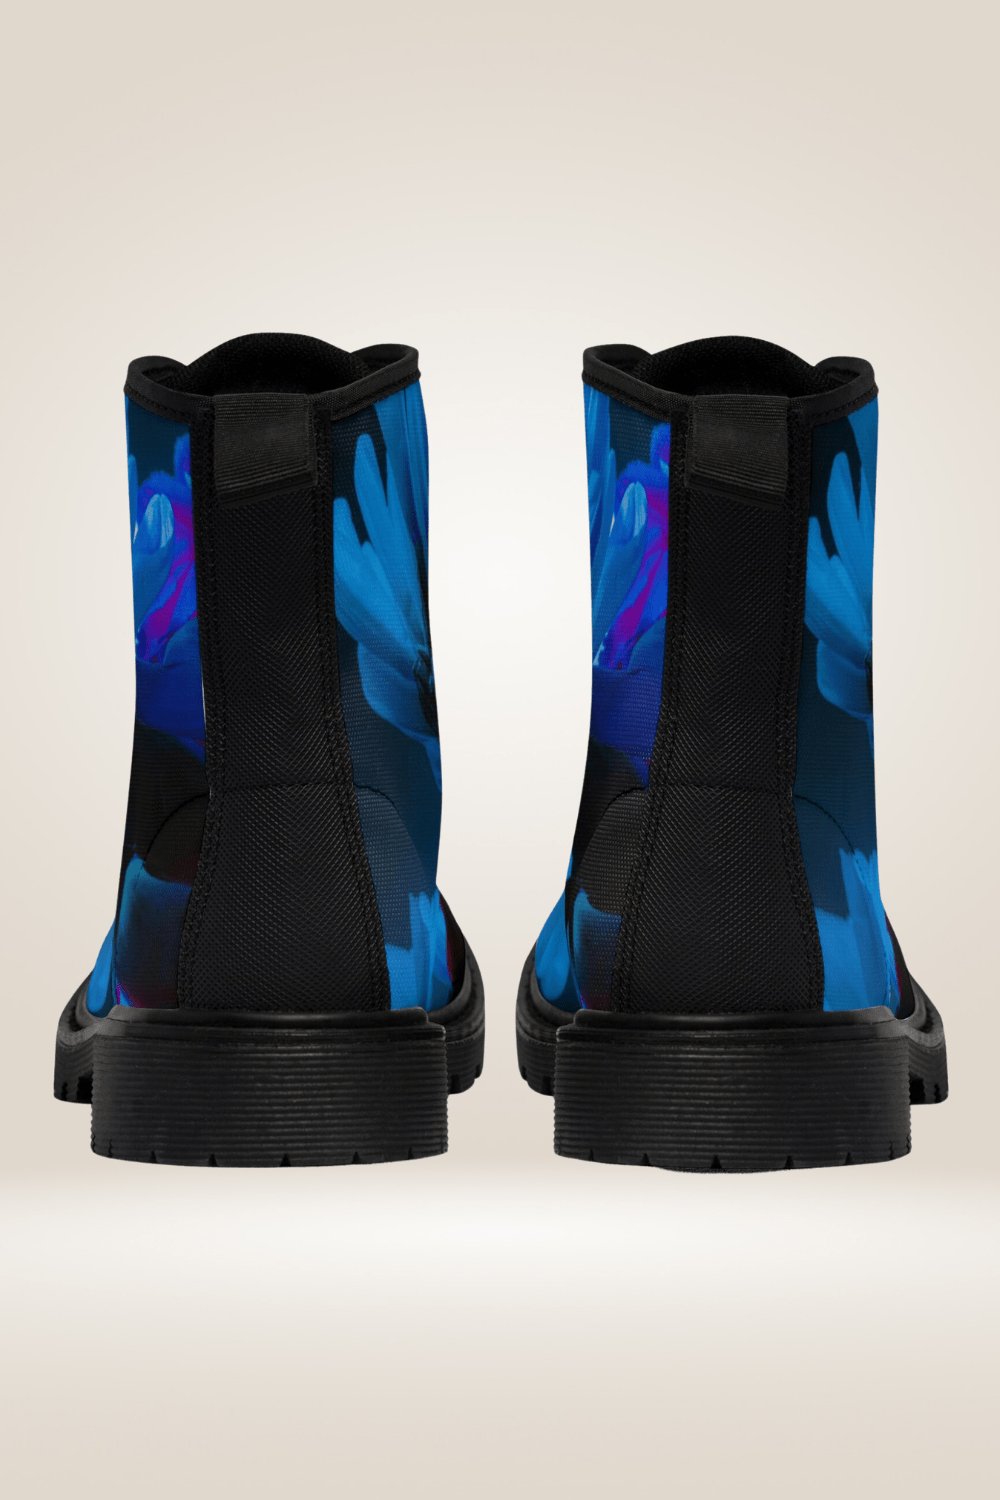 Blue Flower Print Combat Boots - Black Sole - TGC Boutique - Boots